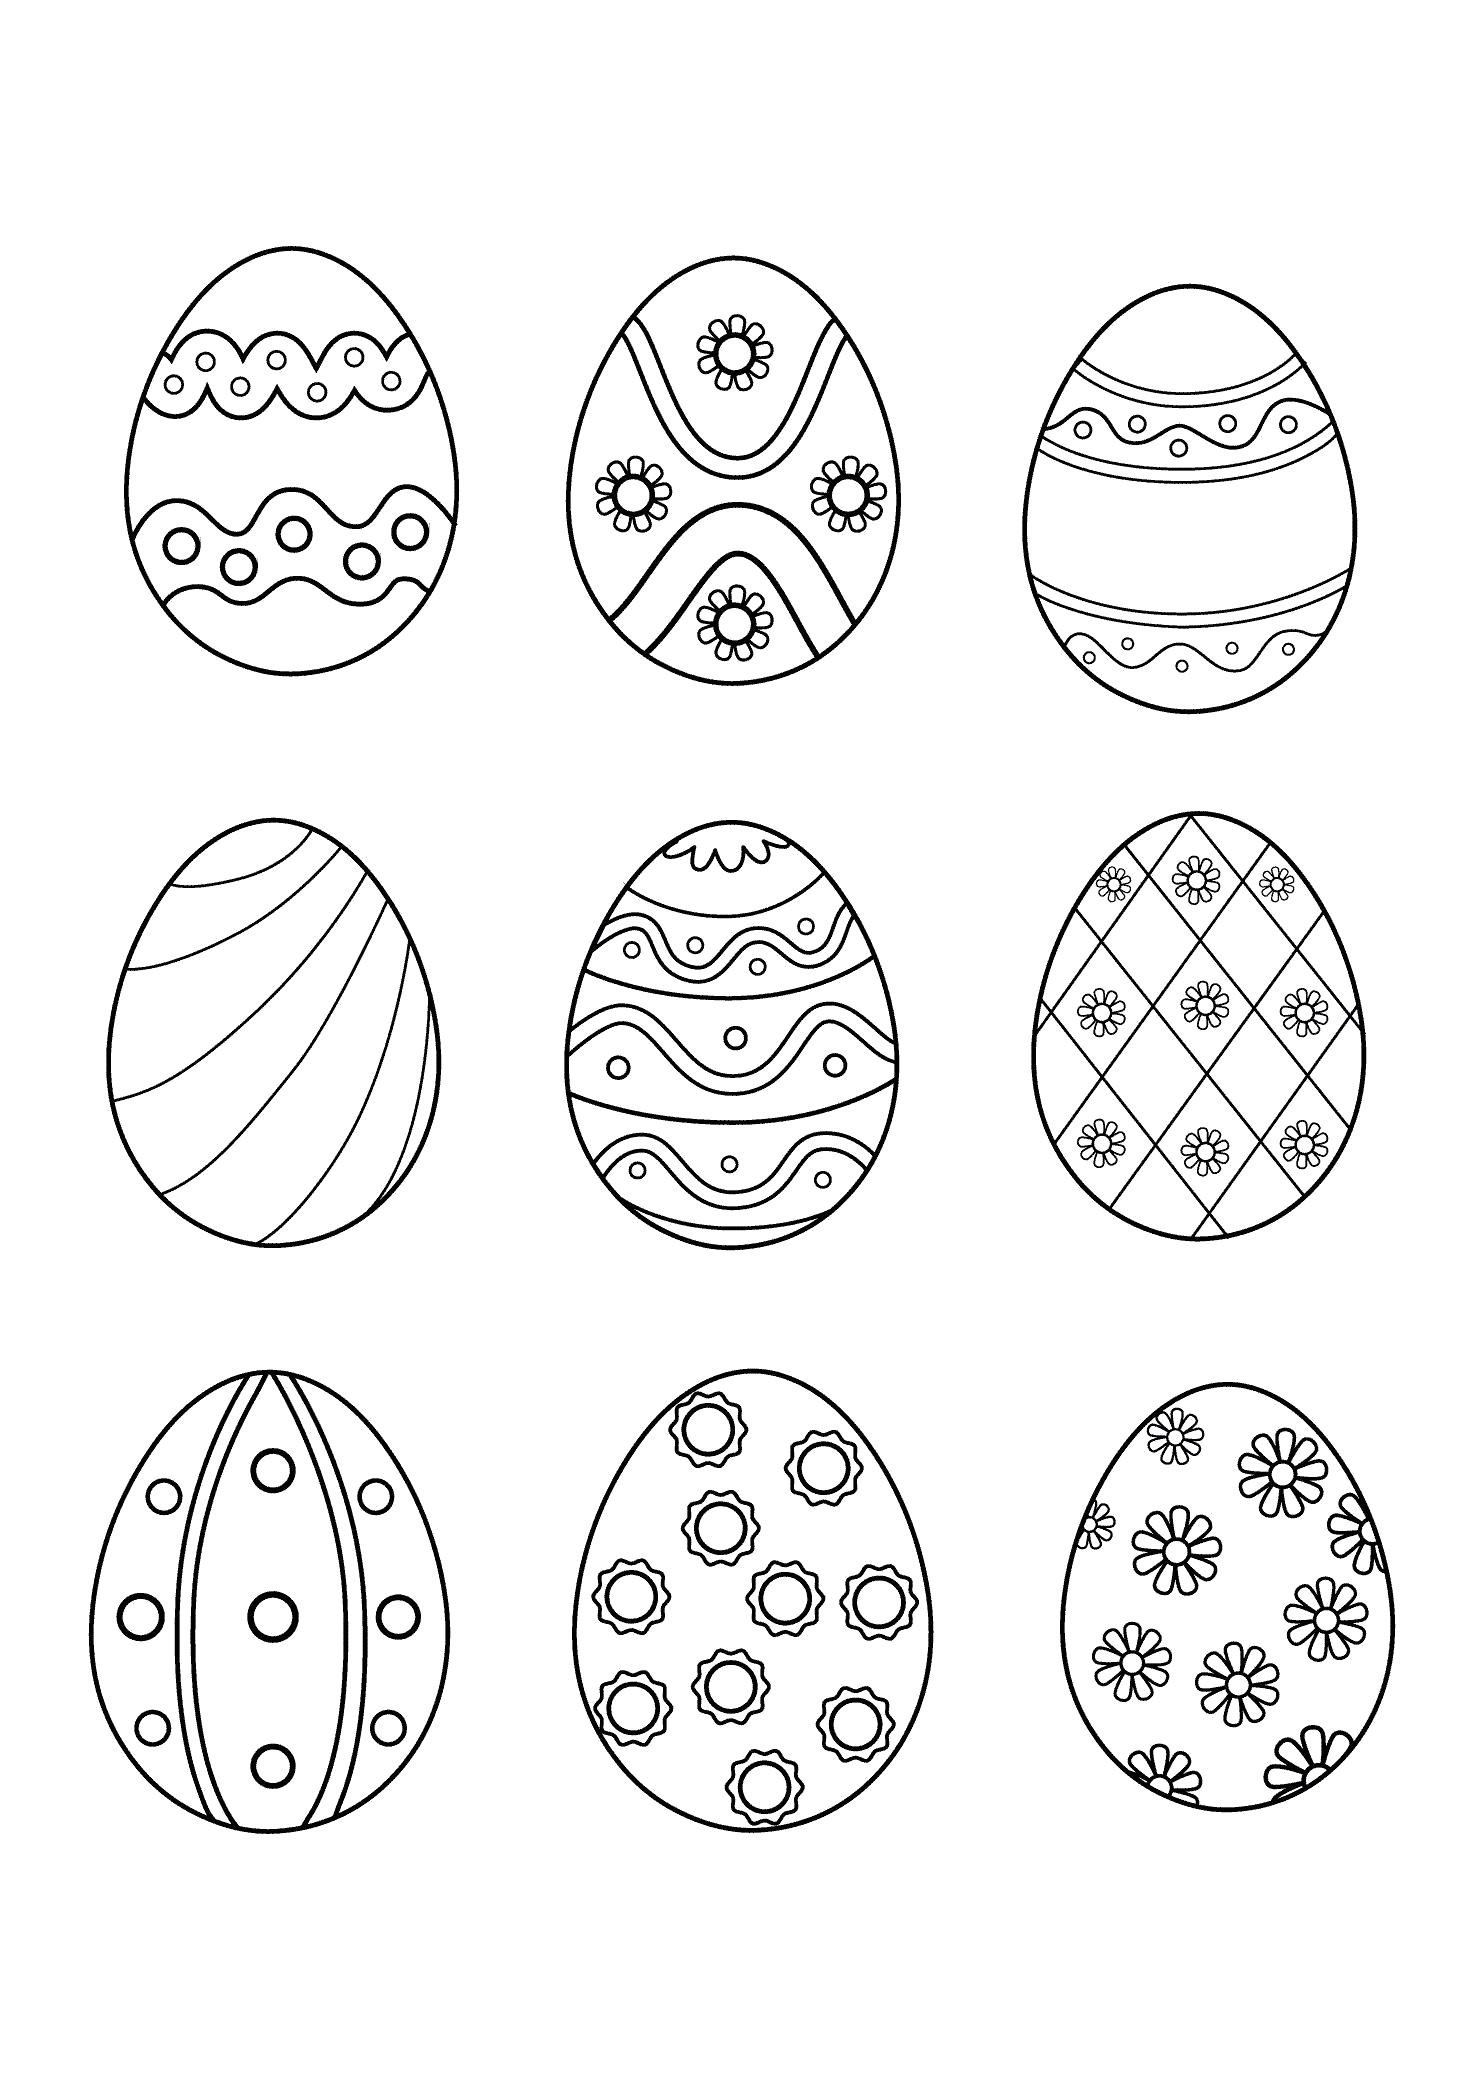 Раскраска Раскраска Яйца. Раскраска Пасхальные яйца, раскрашенные яйца, яйца к пасхе, картинка пасха. Пасха